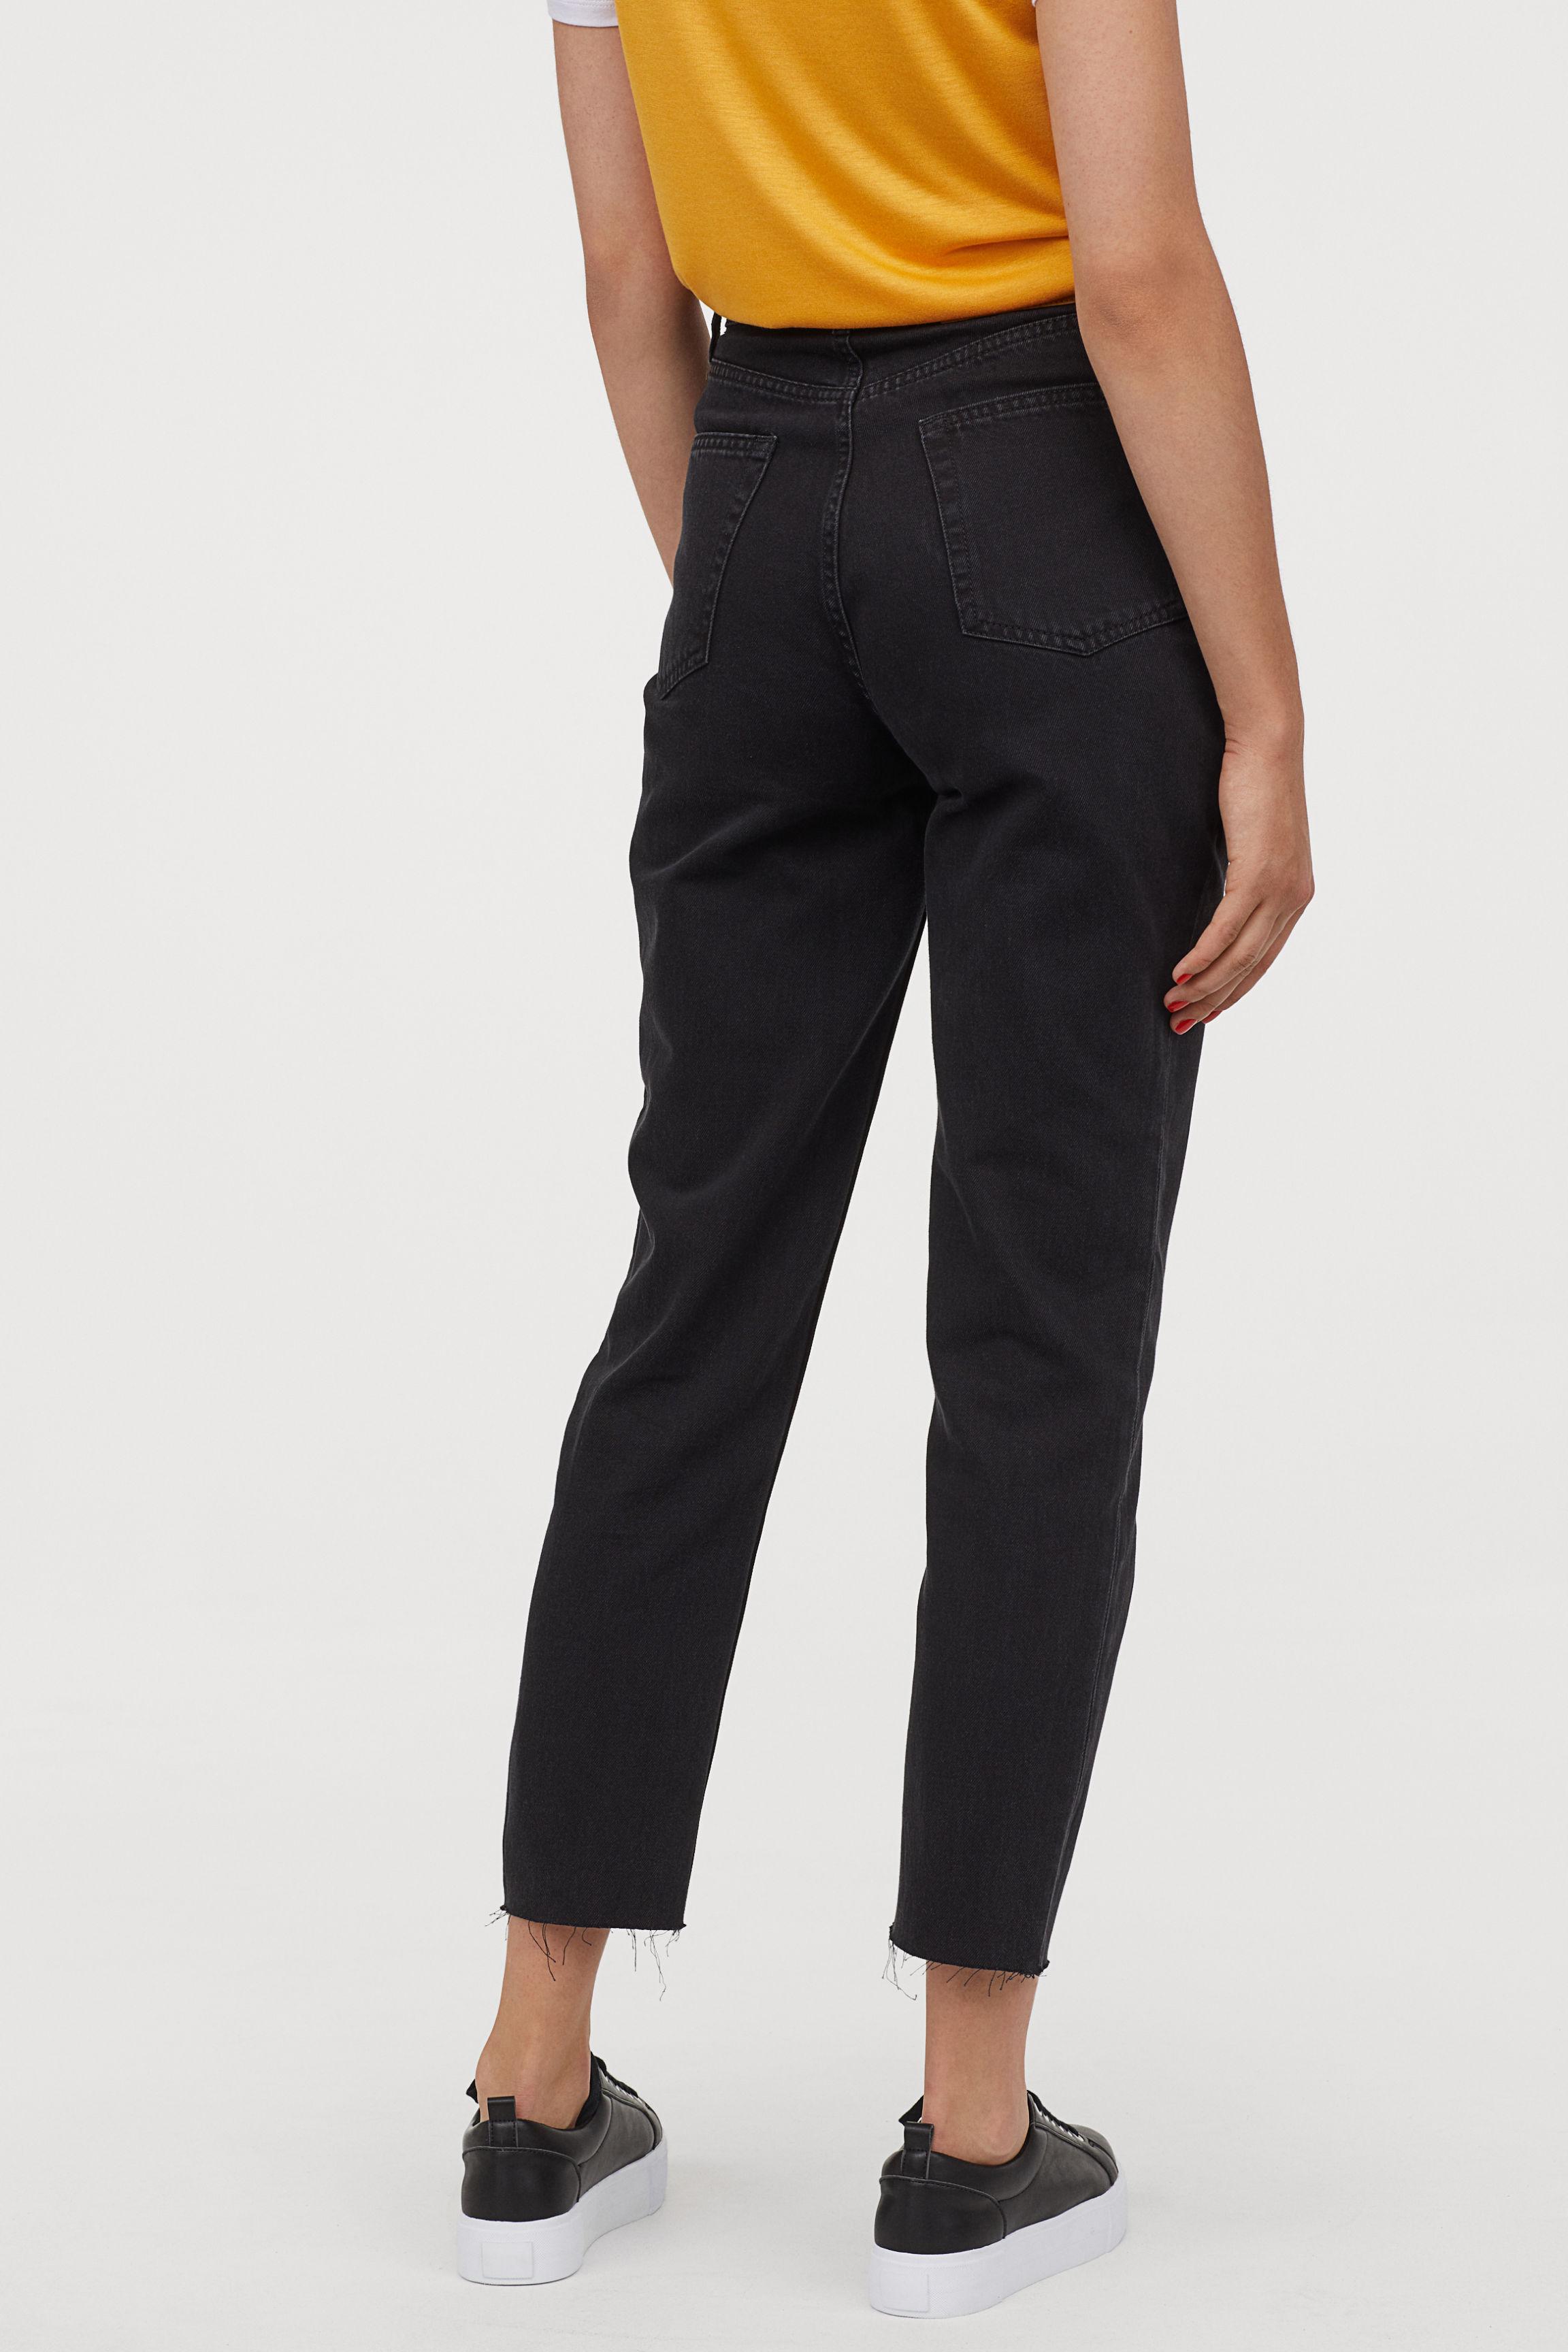 H&M Denim Slim Mom Jeans in Black Denim (Black) - Lyst